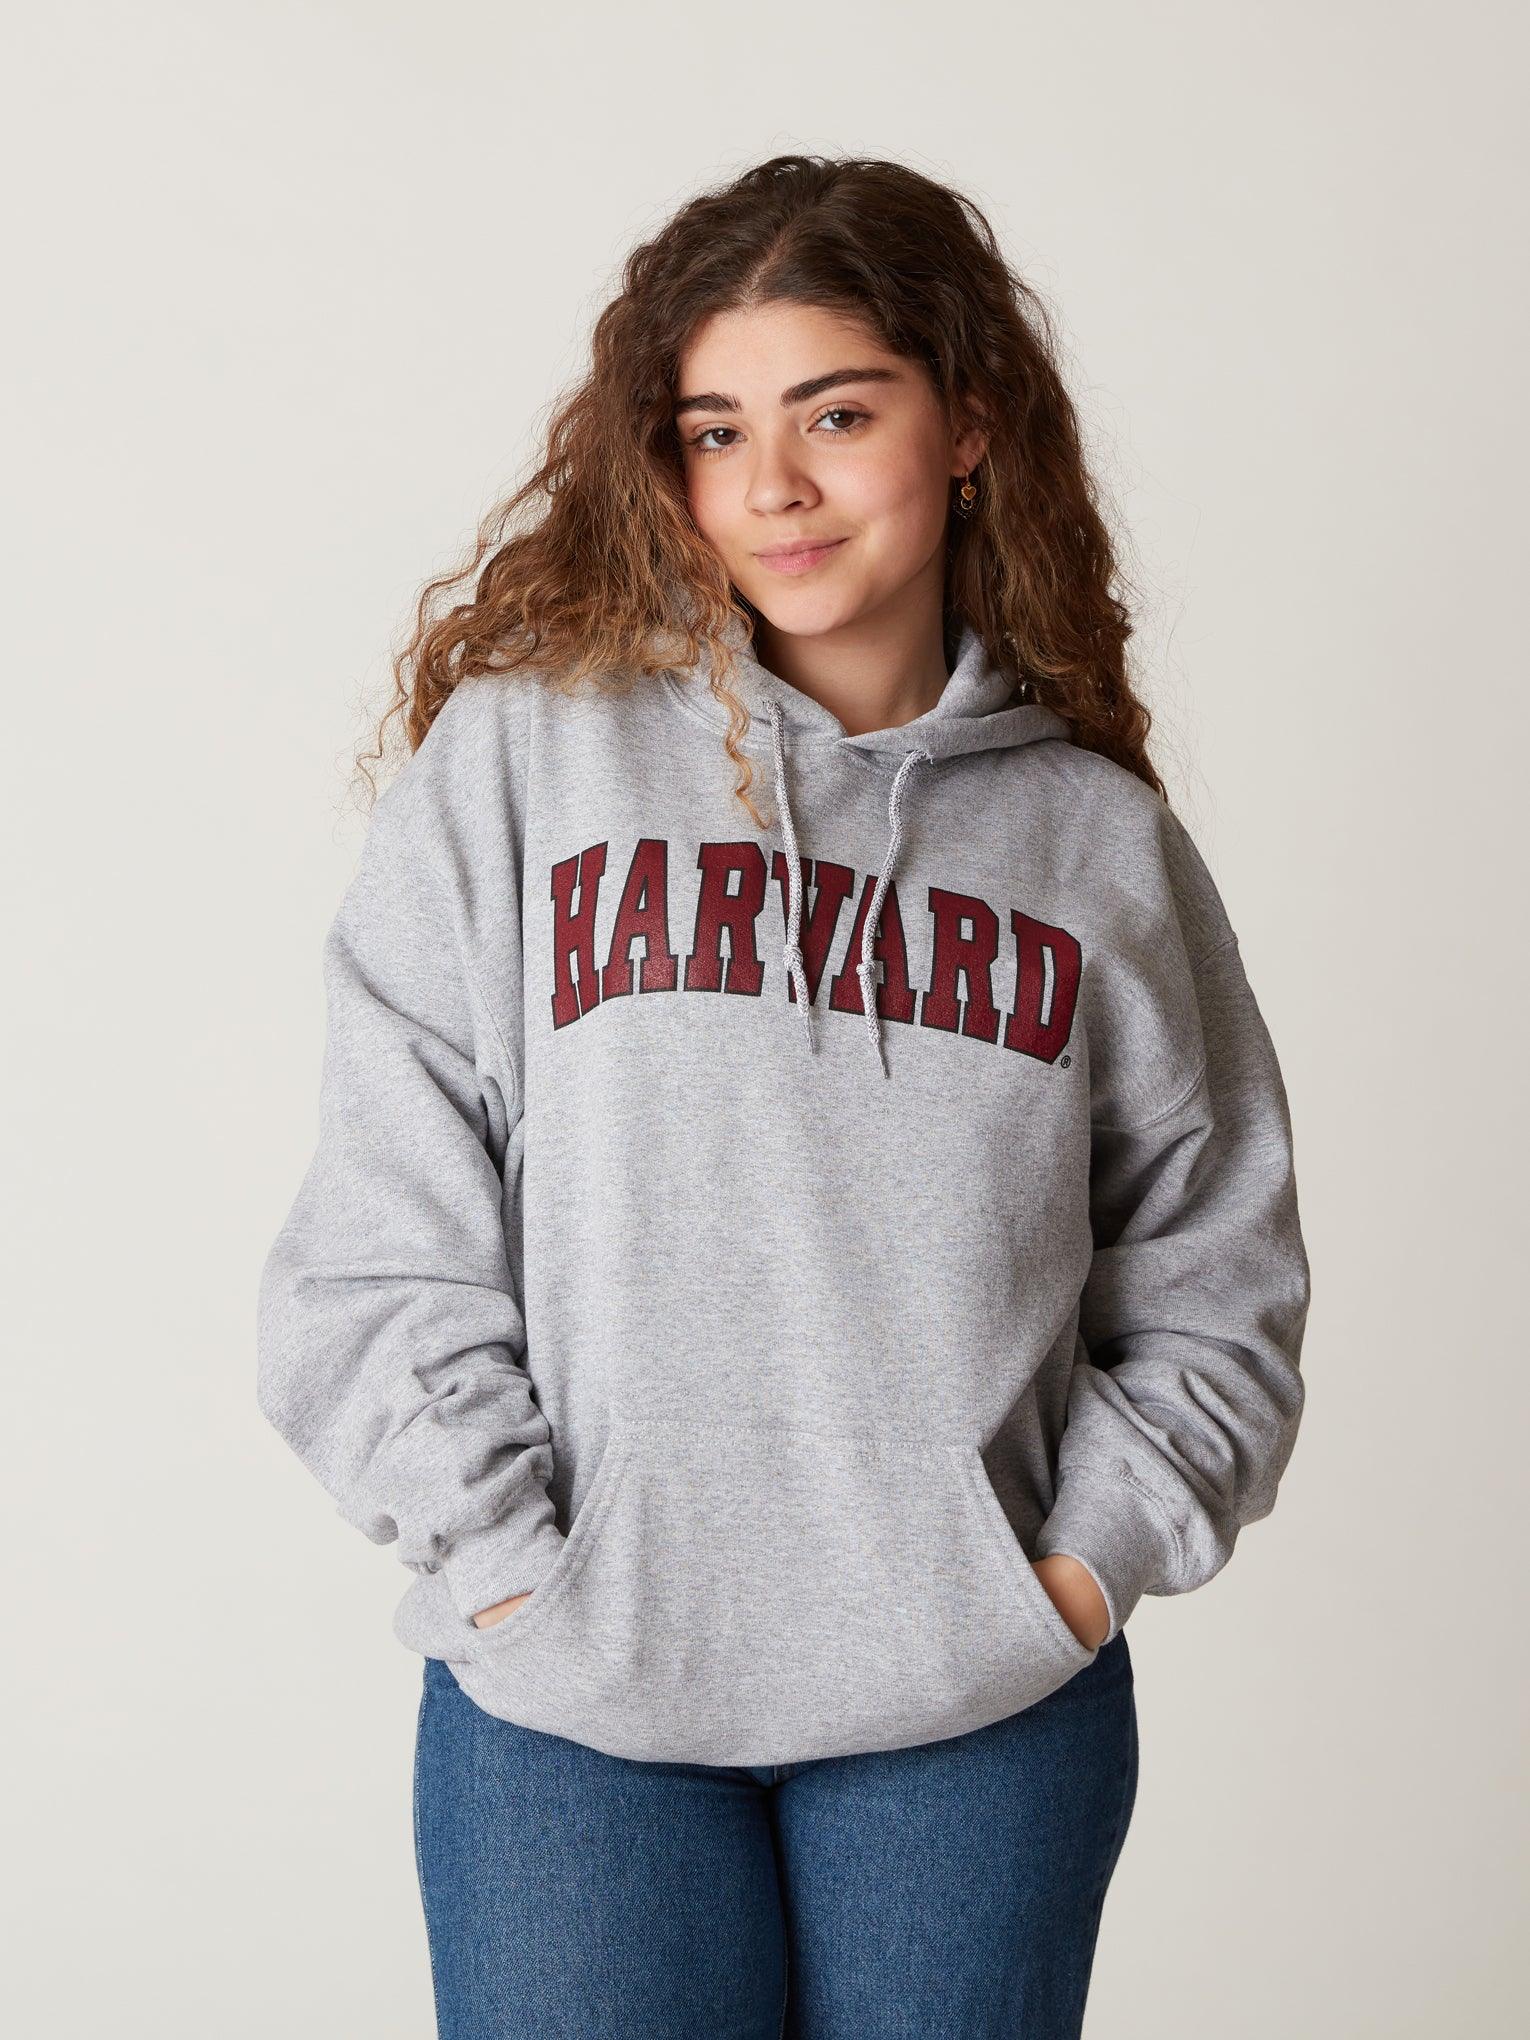 Harvard University Hoodie Officially Licensed Hooded Sweatshirt